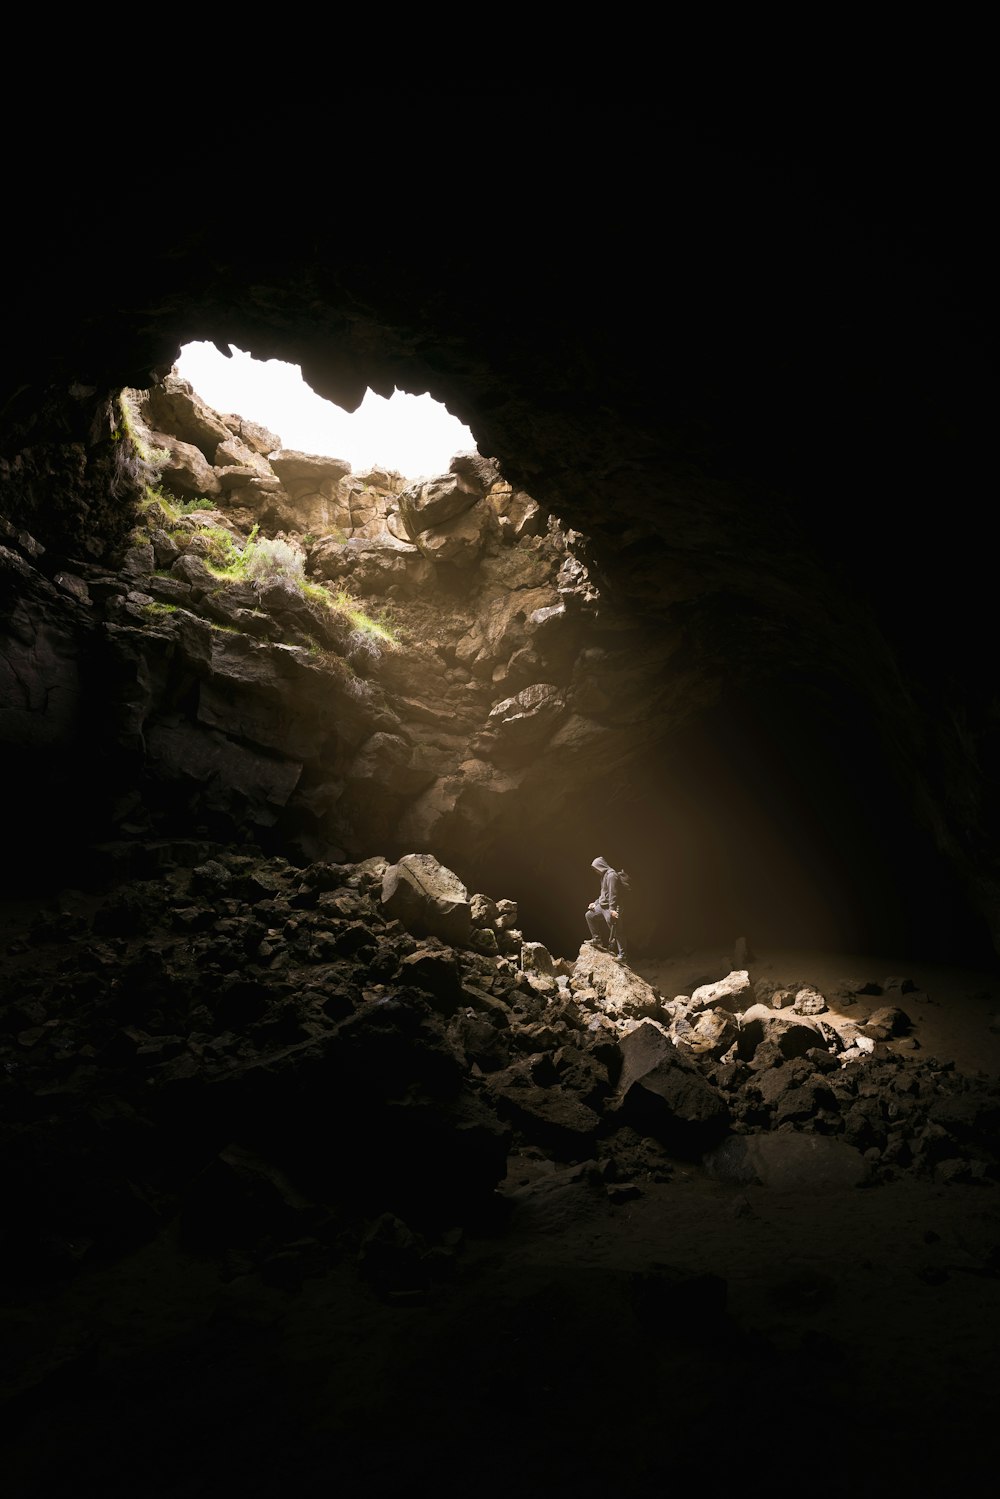 Una persona parada en una cueva con una luz que entra